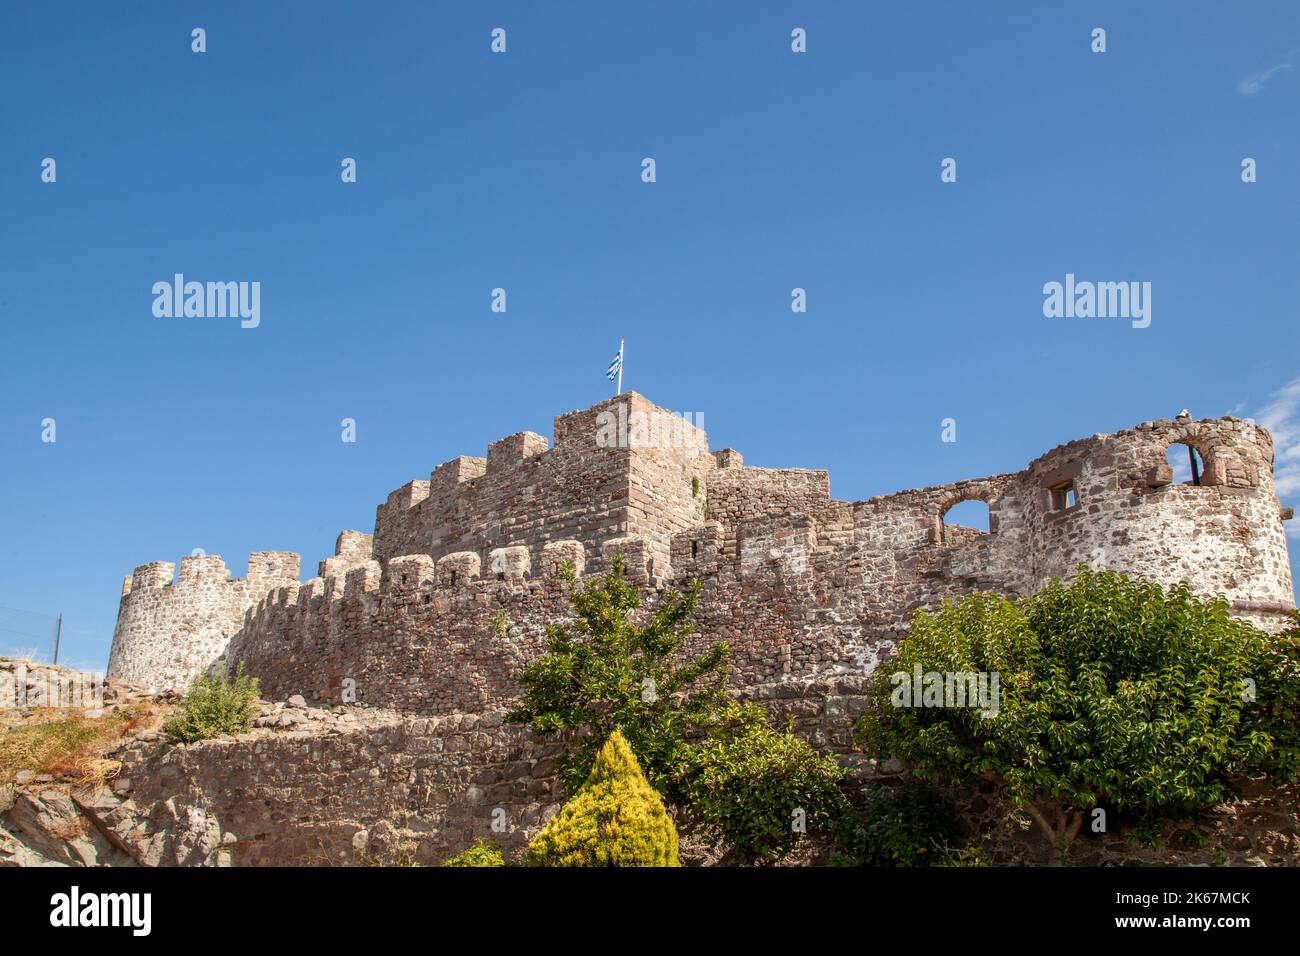 Blick auf das Schloss im griechischen Ferienort Molyvos auf der Insel Lesvos Griechenland Stockfoto